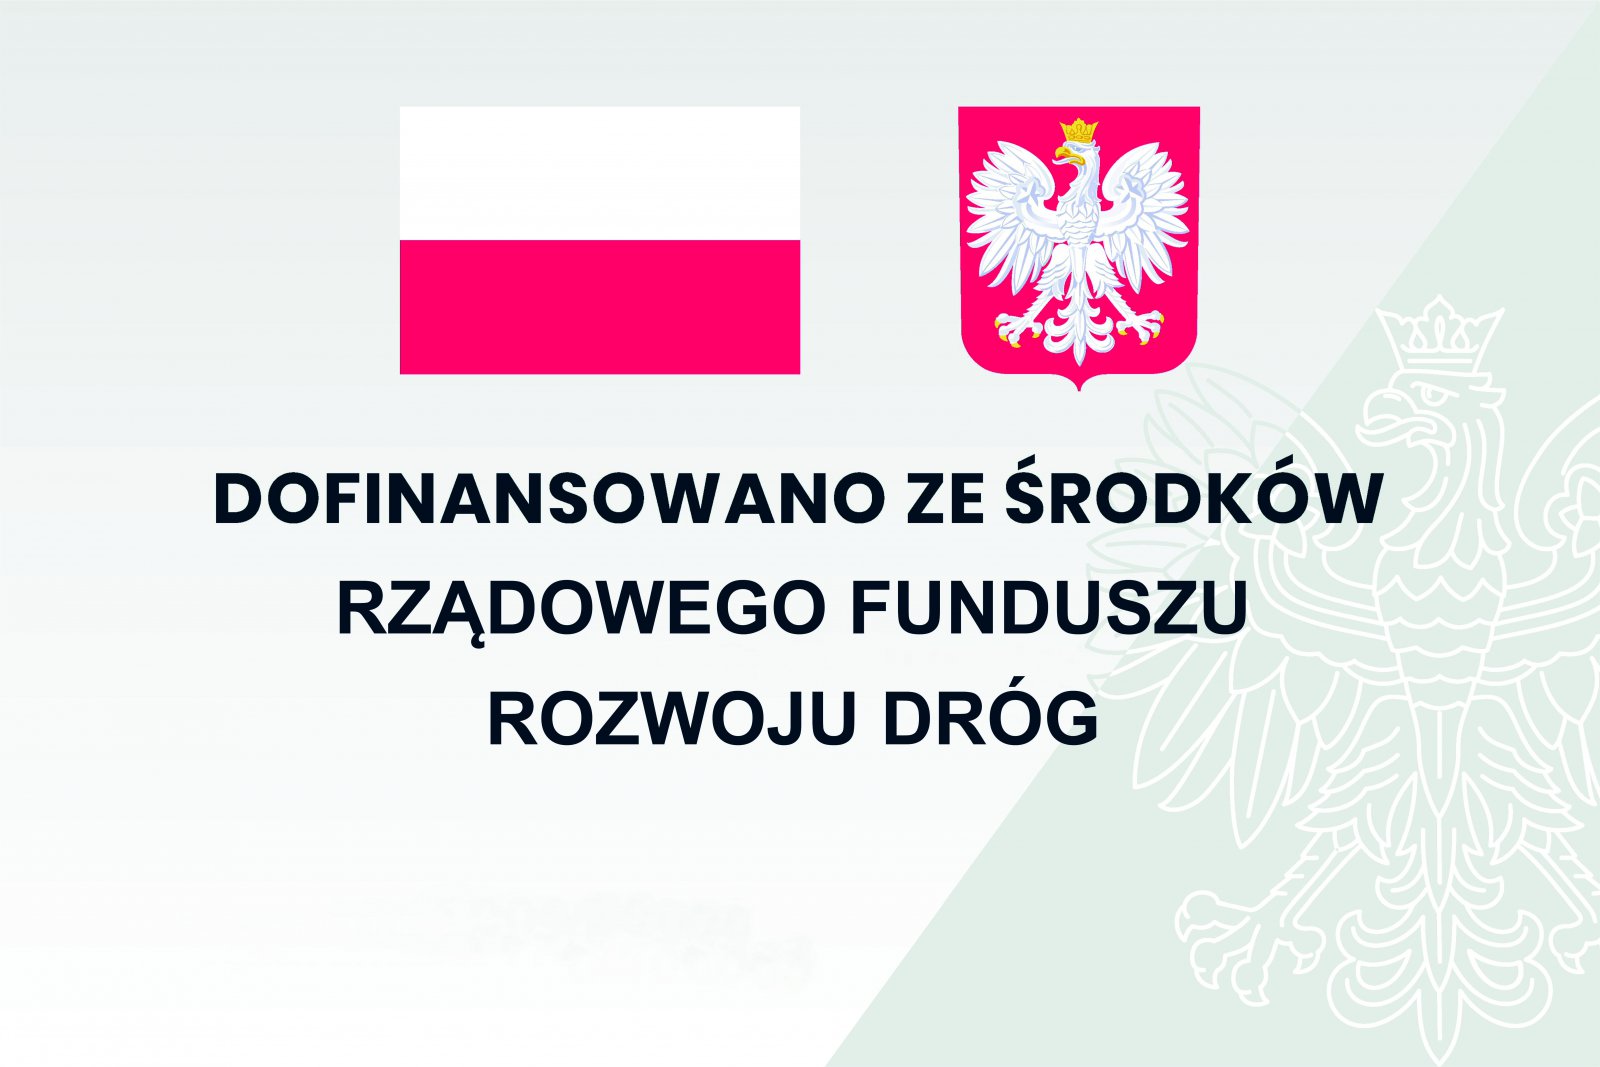 Flaga i godło Polski, pod spodem napis "Dofinasowano ze środków Rządowego Funduszu Rozwoju Dróg"